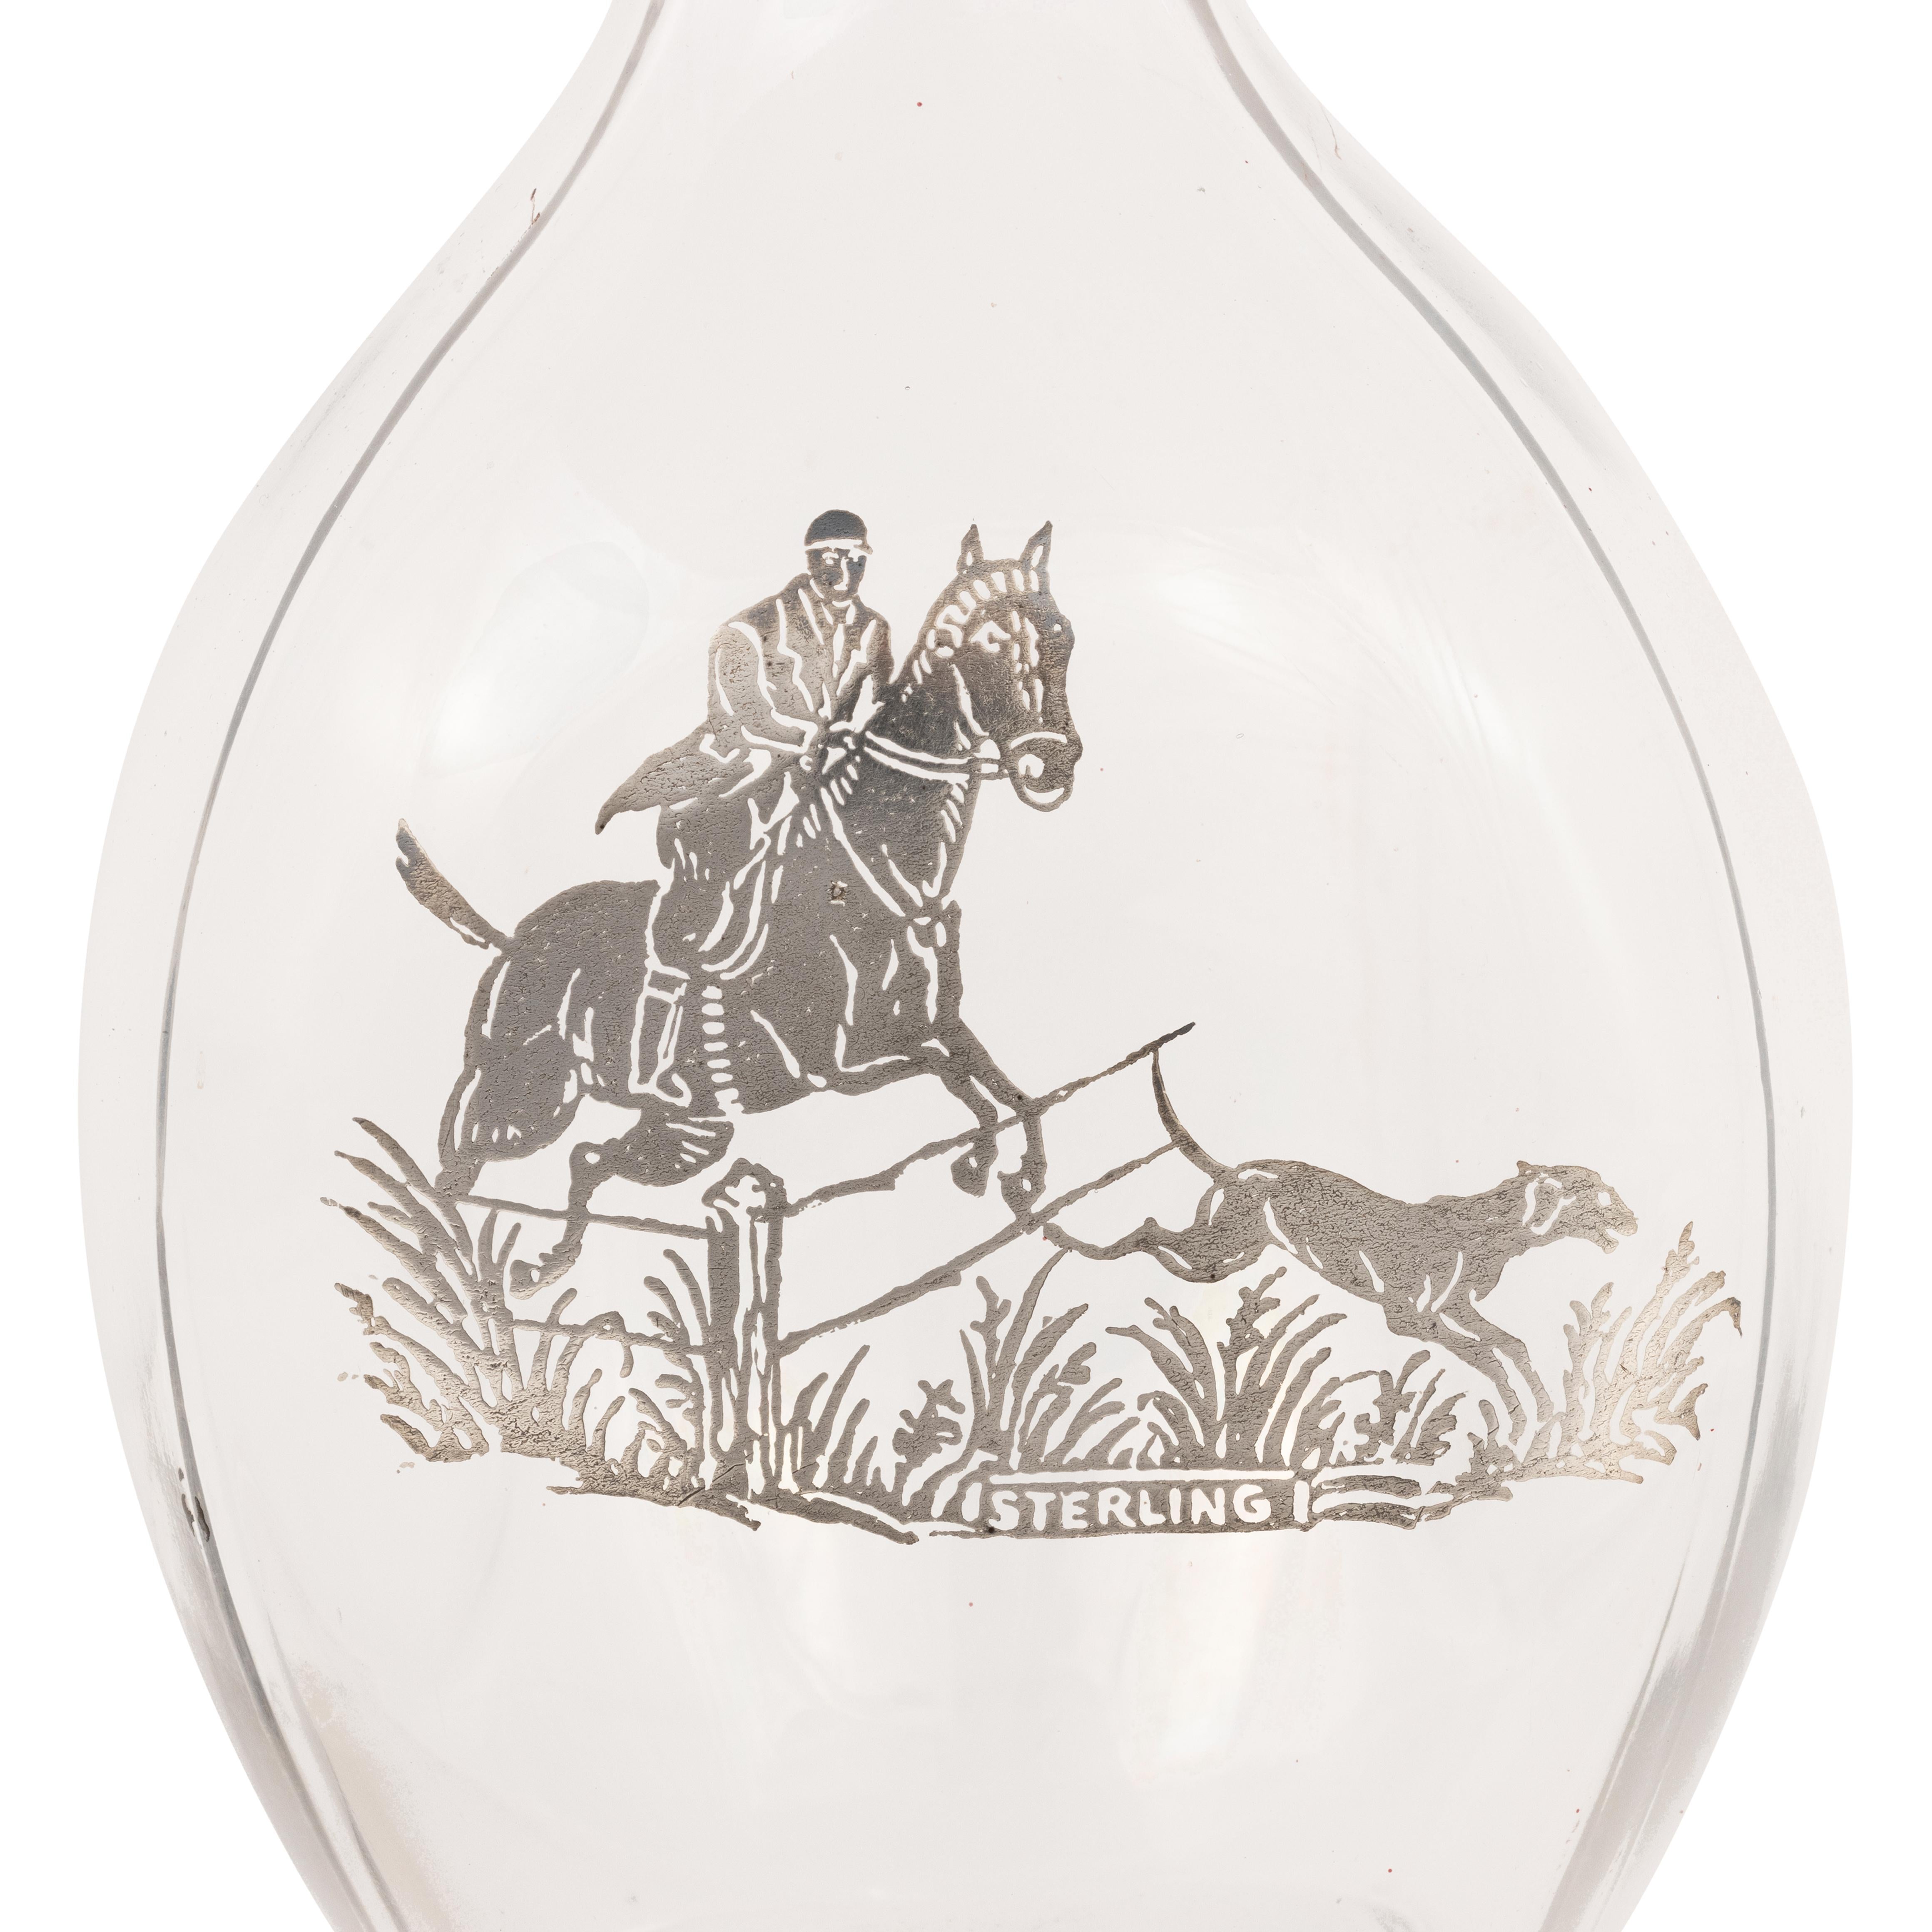 Sportliche Barflasche mit Sterling-Motiv von Fuchsjäger und Jagdhund. Originalstopfen. Dreiteilige Glasform für Quetschflaschen.

PERIODE: 19. Jahrhundert

URSPRUNG: Kalifornien

GRÖSSE: 5